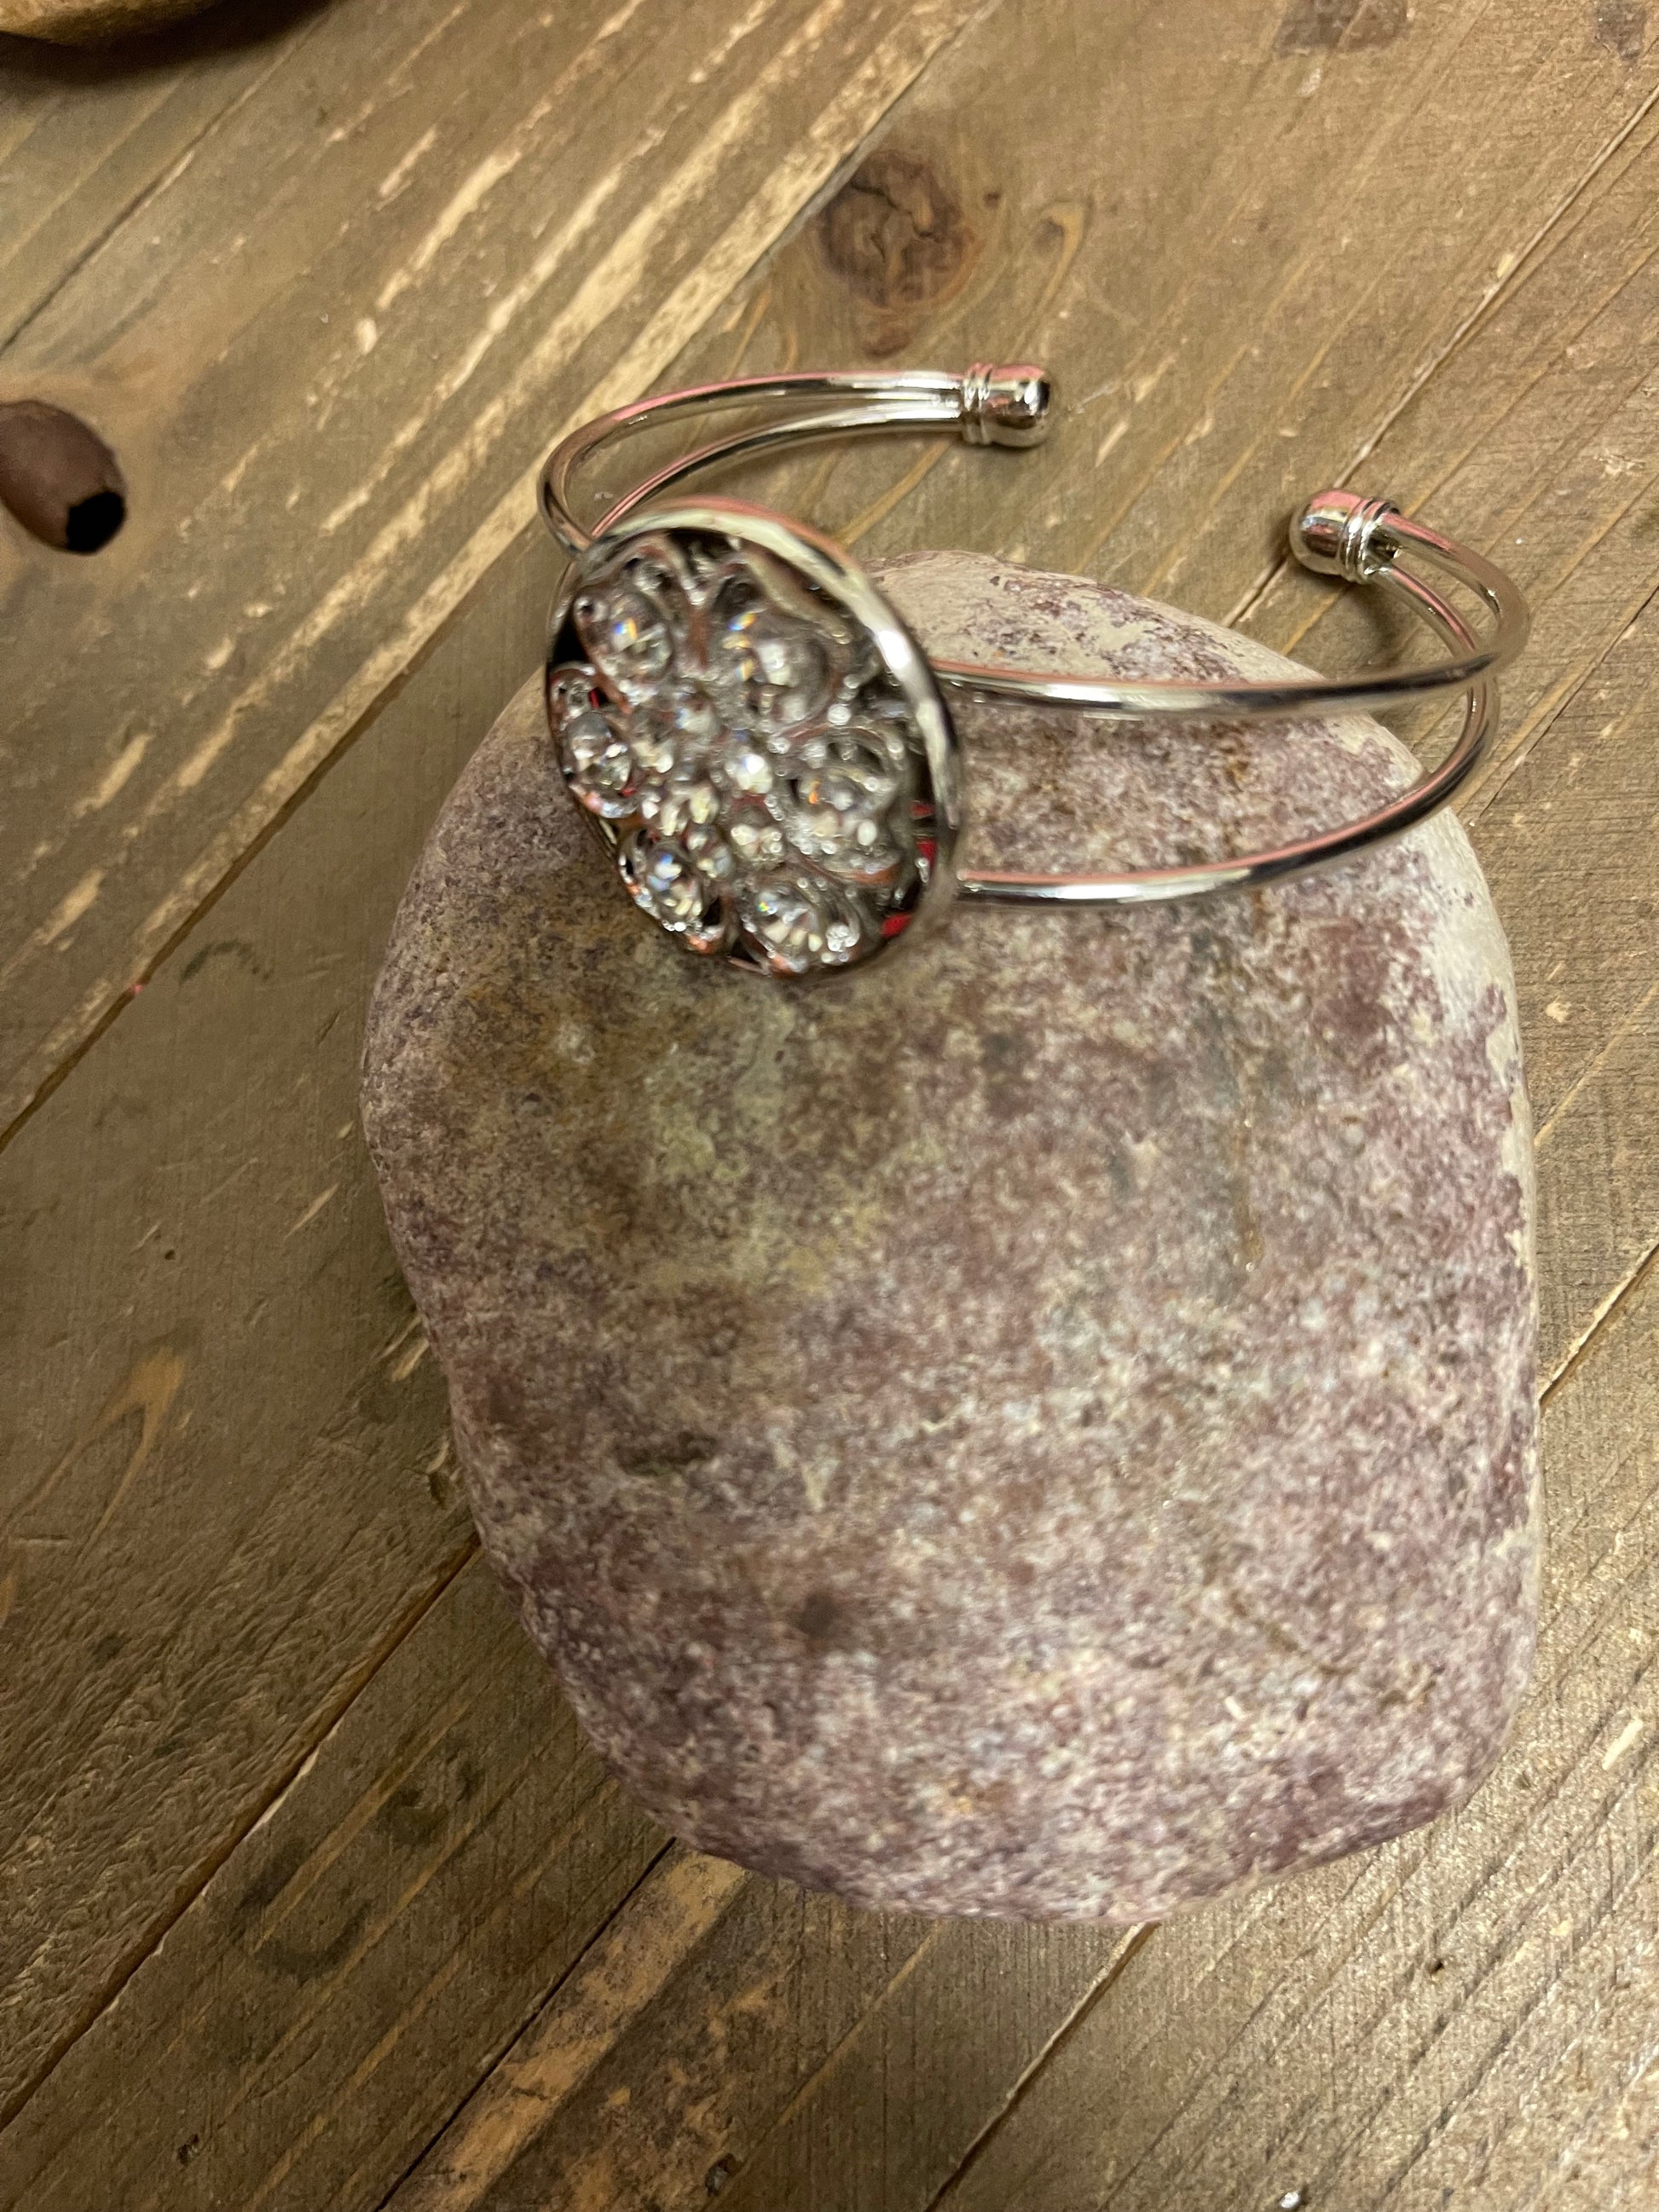 Silver Crystal Rhinestone Broach (BT211-48Scrystal) on a Single Silver Cuff BraceletPink tiful of LOVE